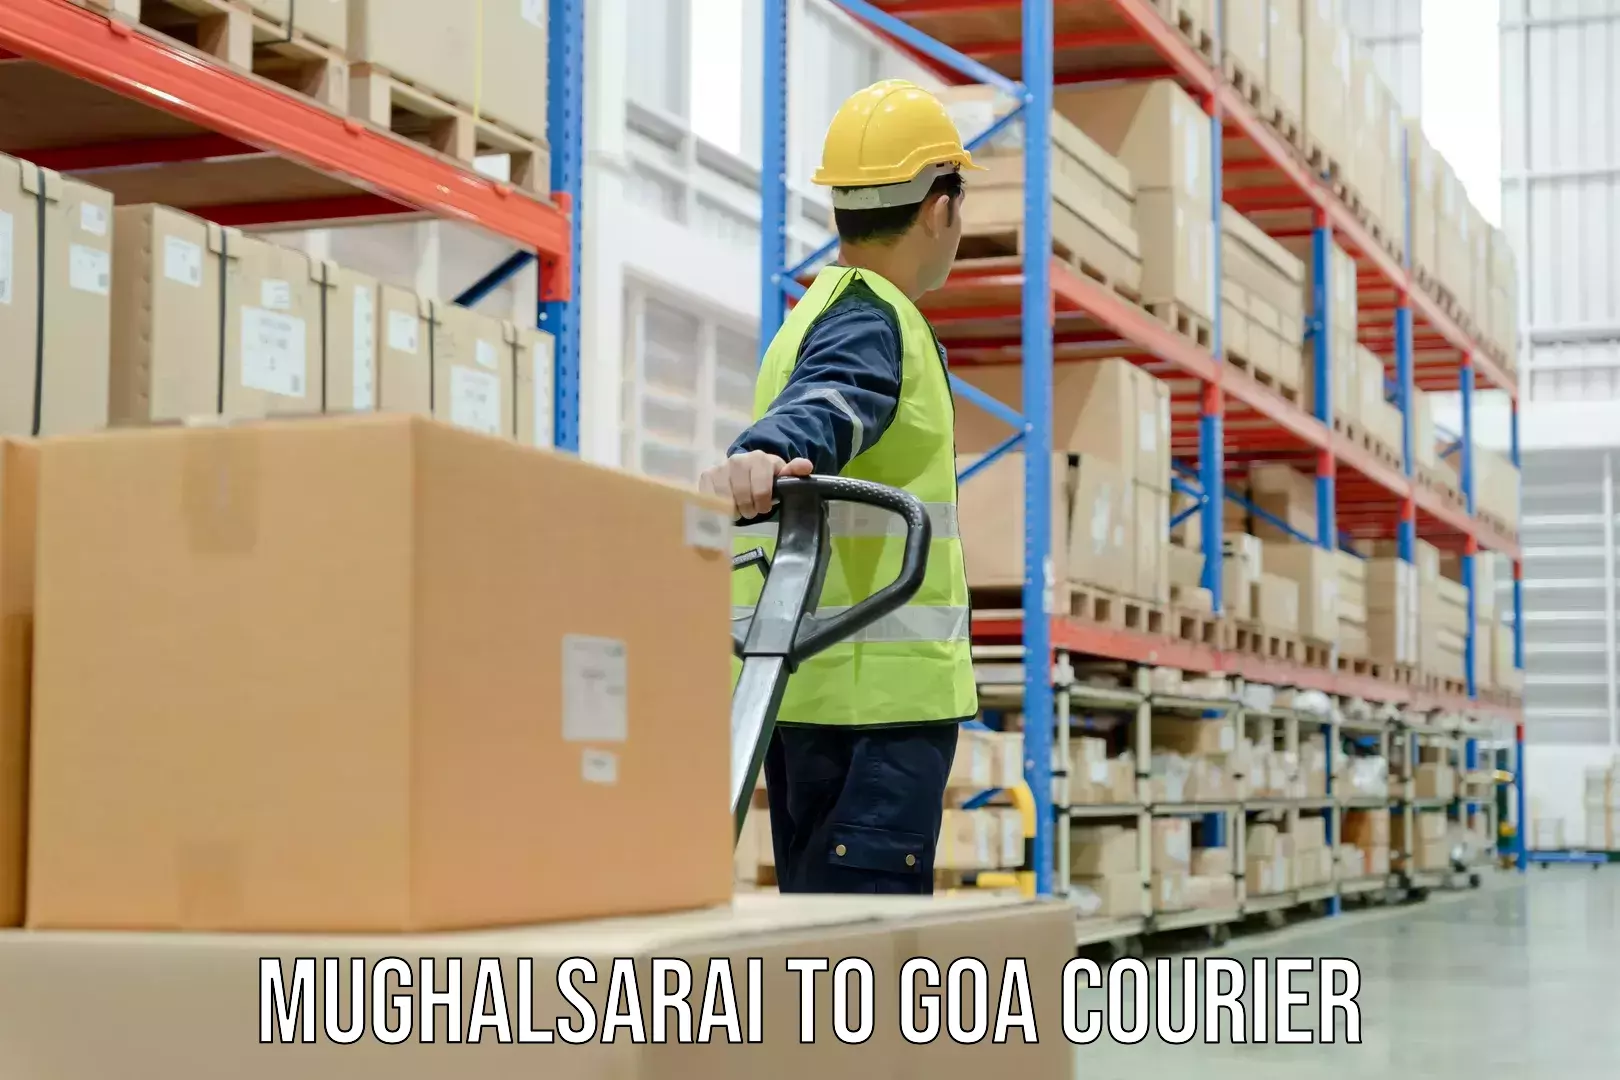 24-hour courier service Mughalsarai to Goa University